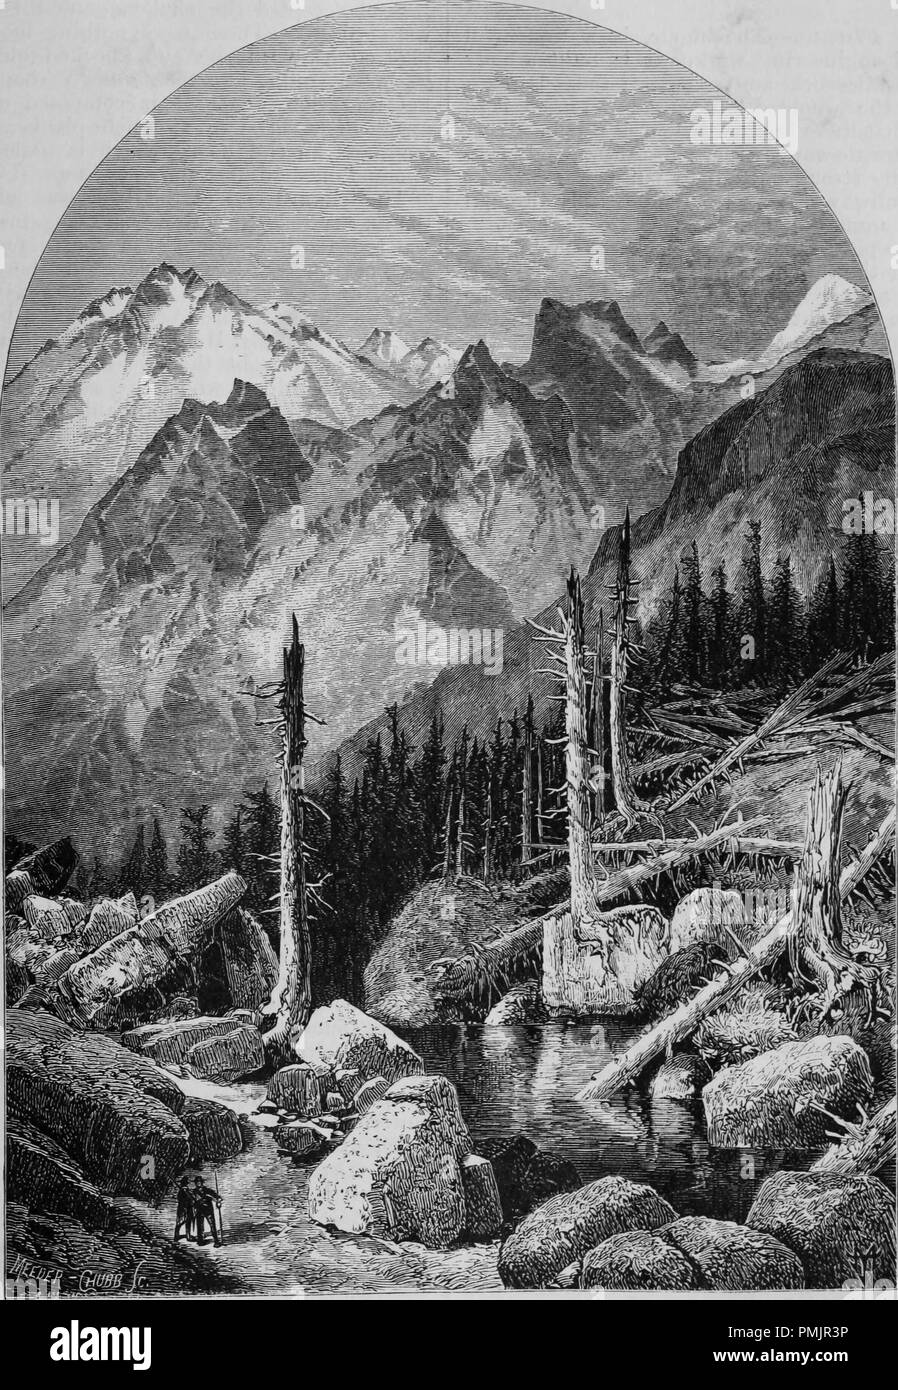 Incisione di cime della Sierra Nevada, dal libro "Pacifico turisti", 1877. La cortesia Internet Archive. () Foto Stock